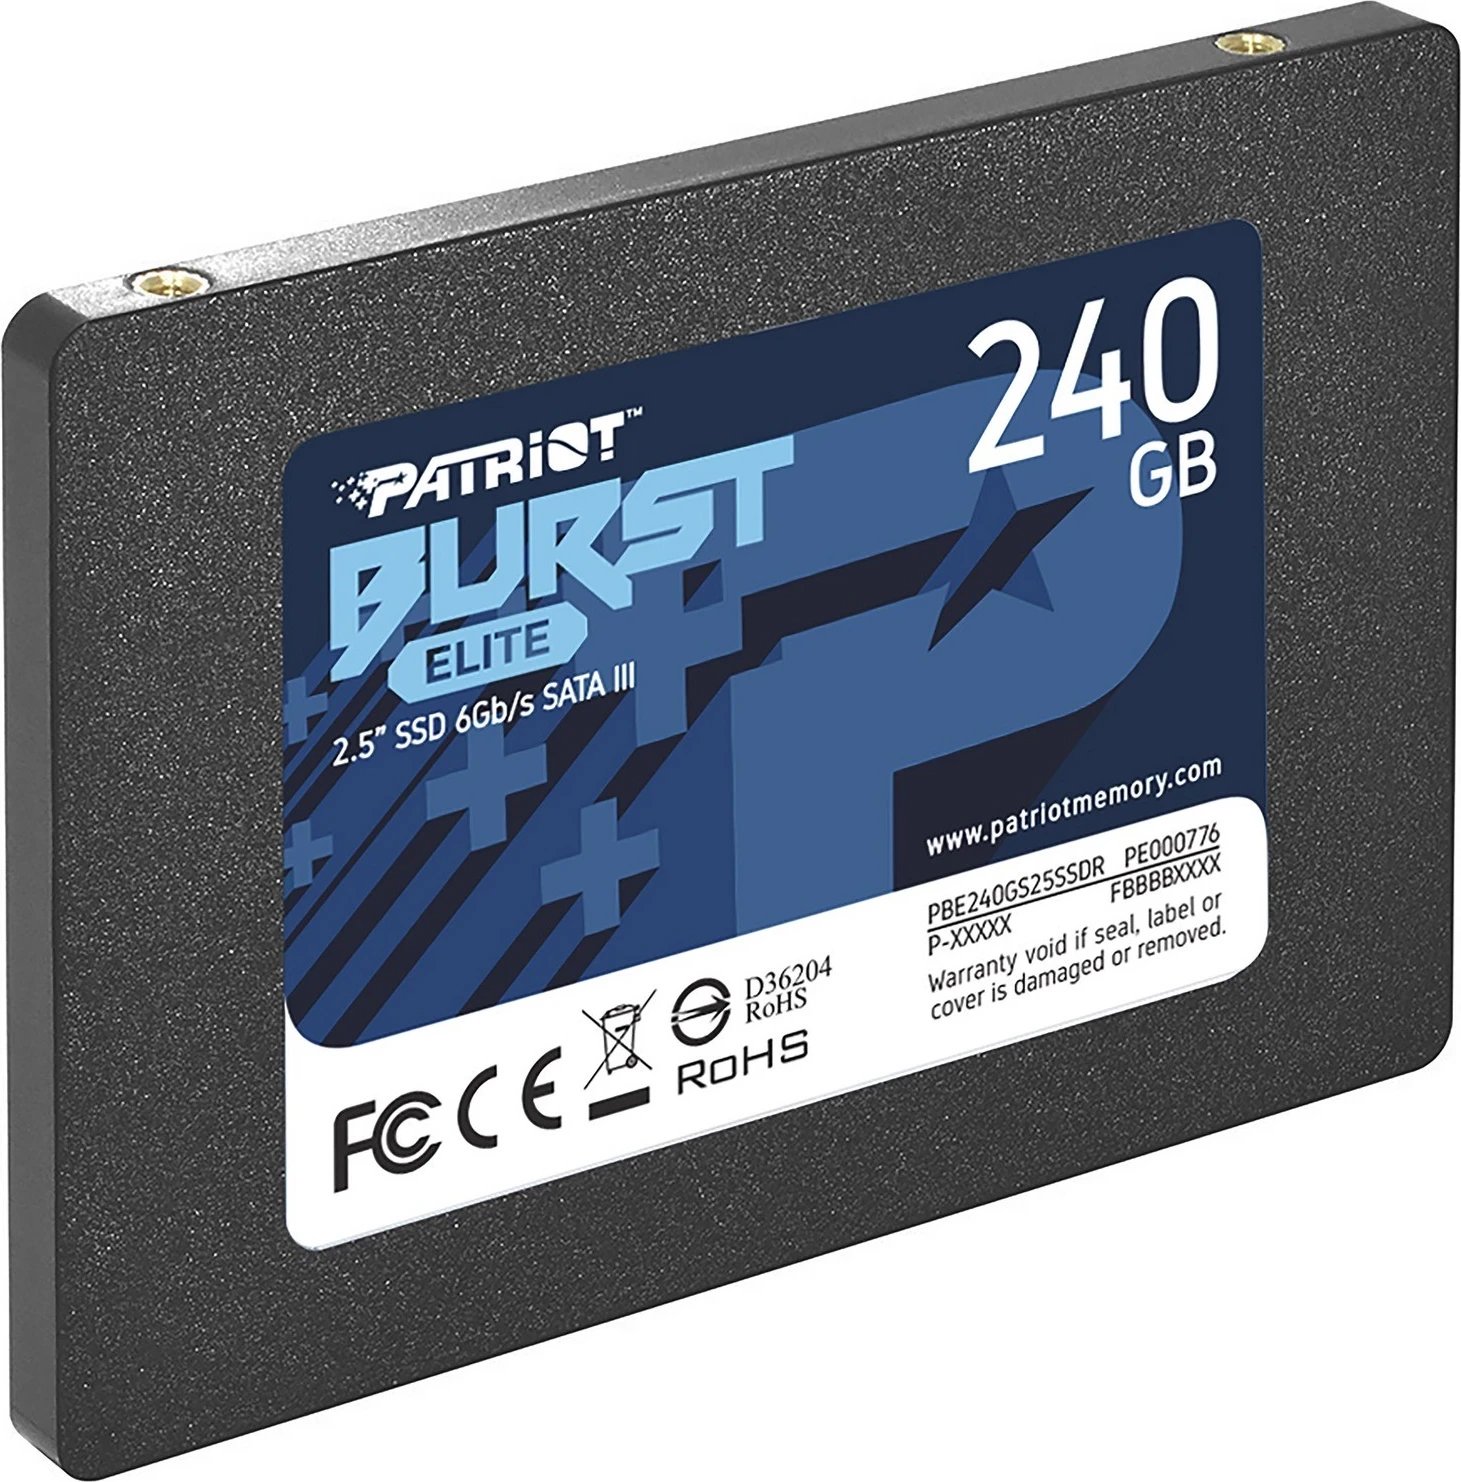 Disk SSD, Patriot Burst Elite, 240GB